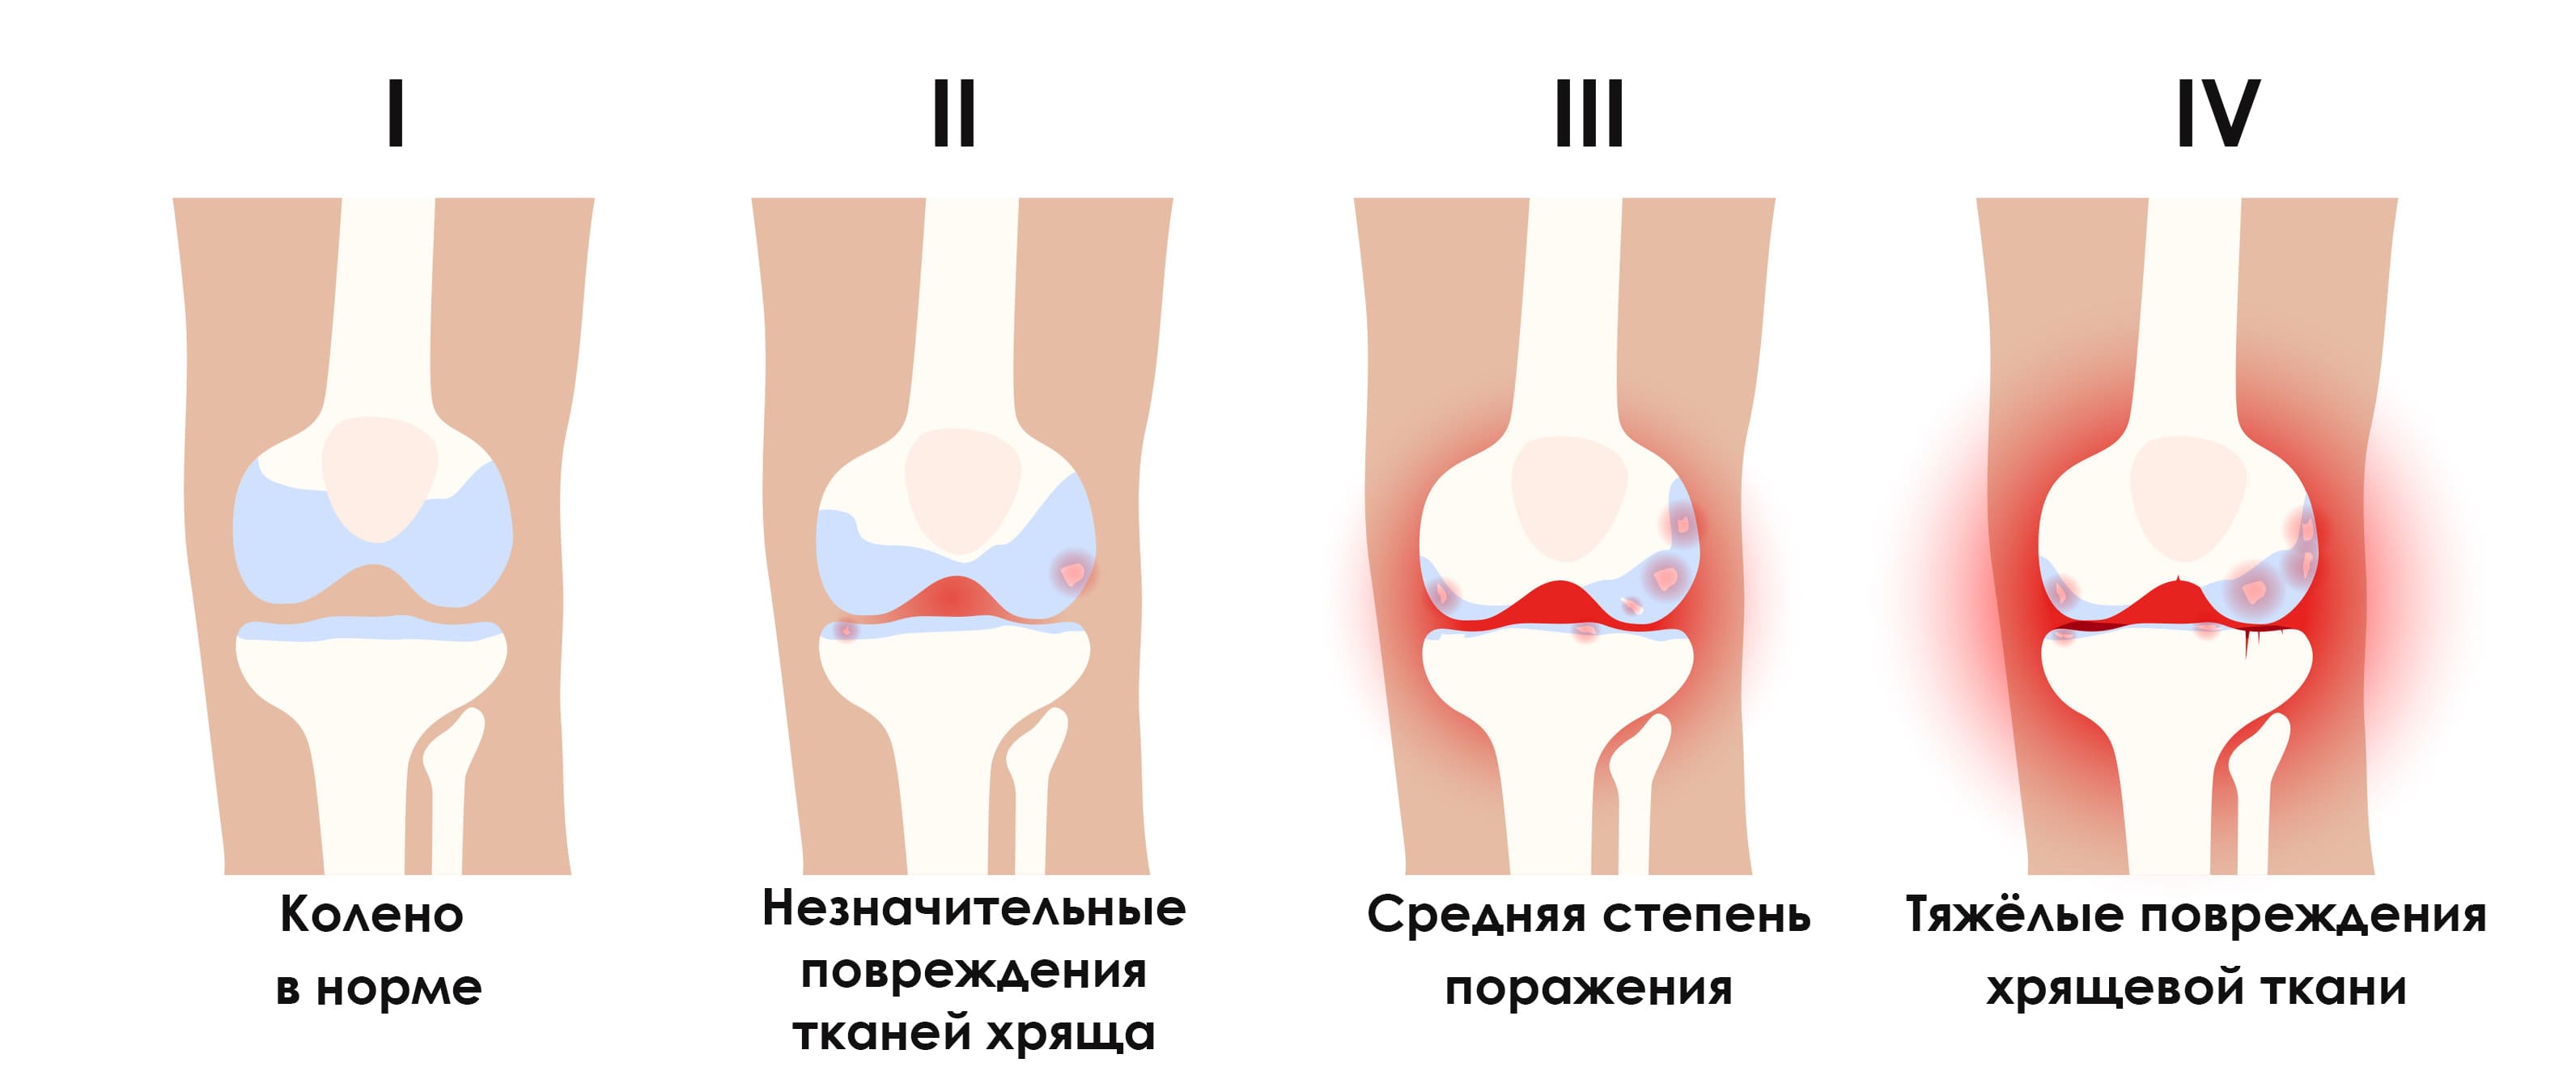 Артроз (гонартроз) коленного сустава